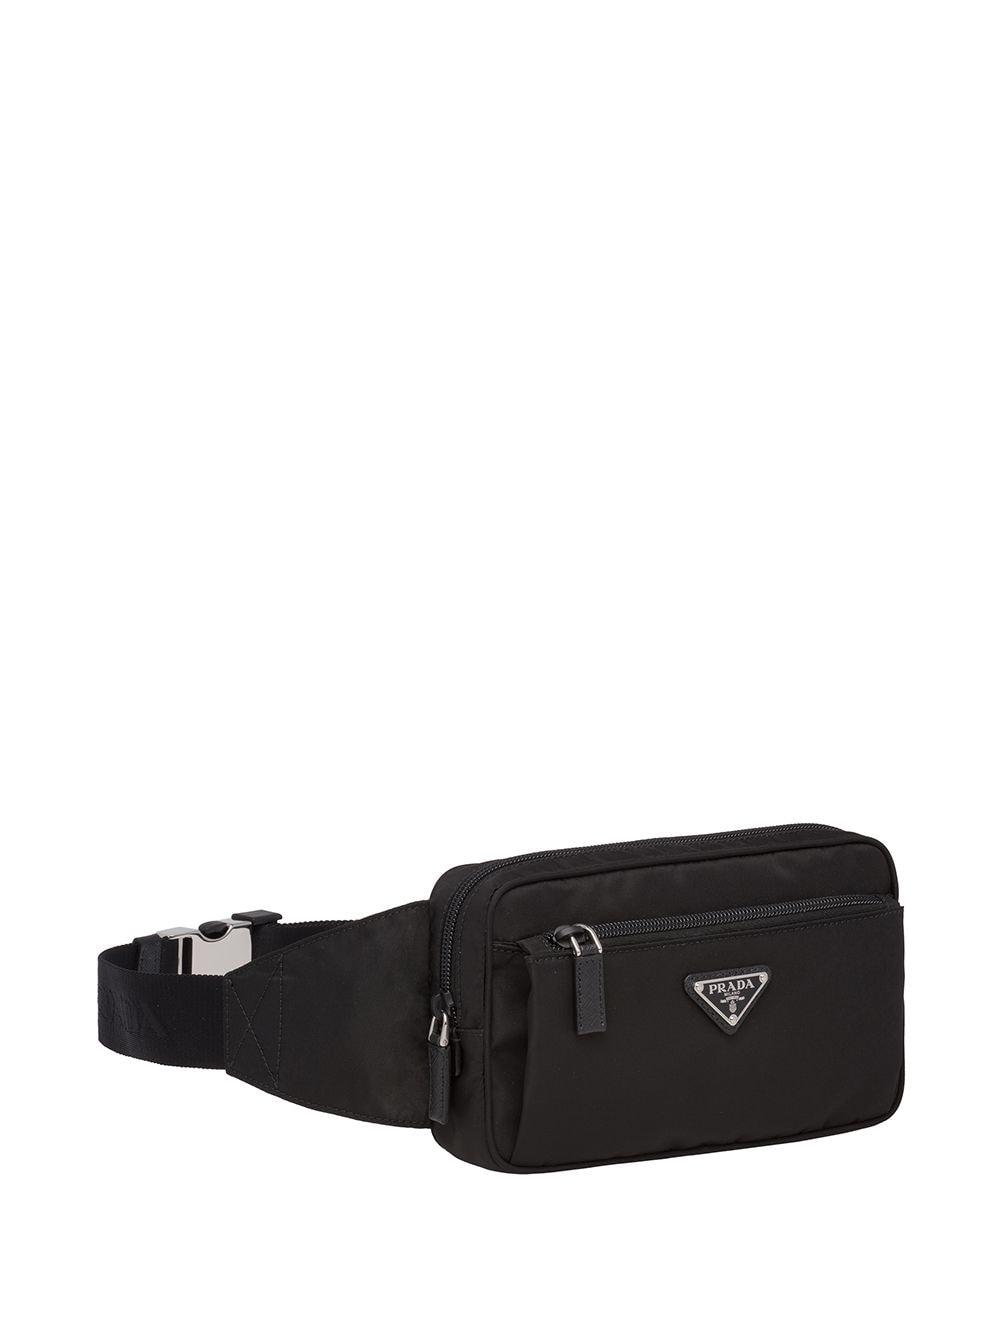 Prada Synthetic Logo Belt Bag in Black for Men - Lyst